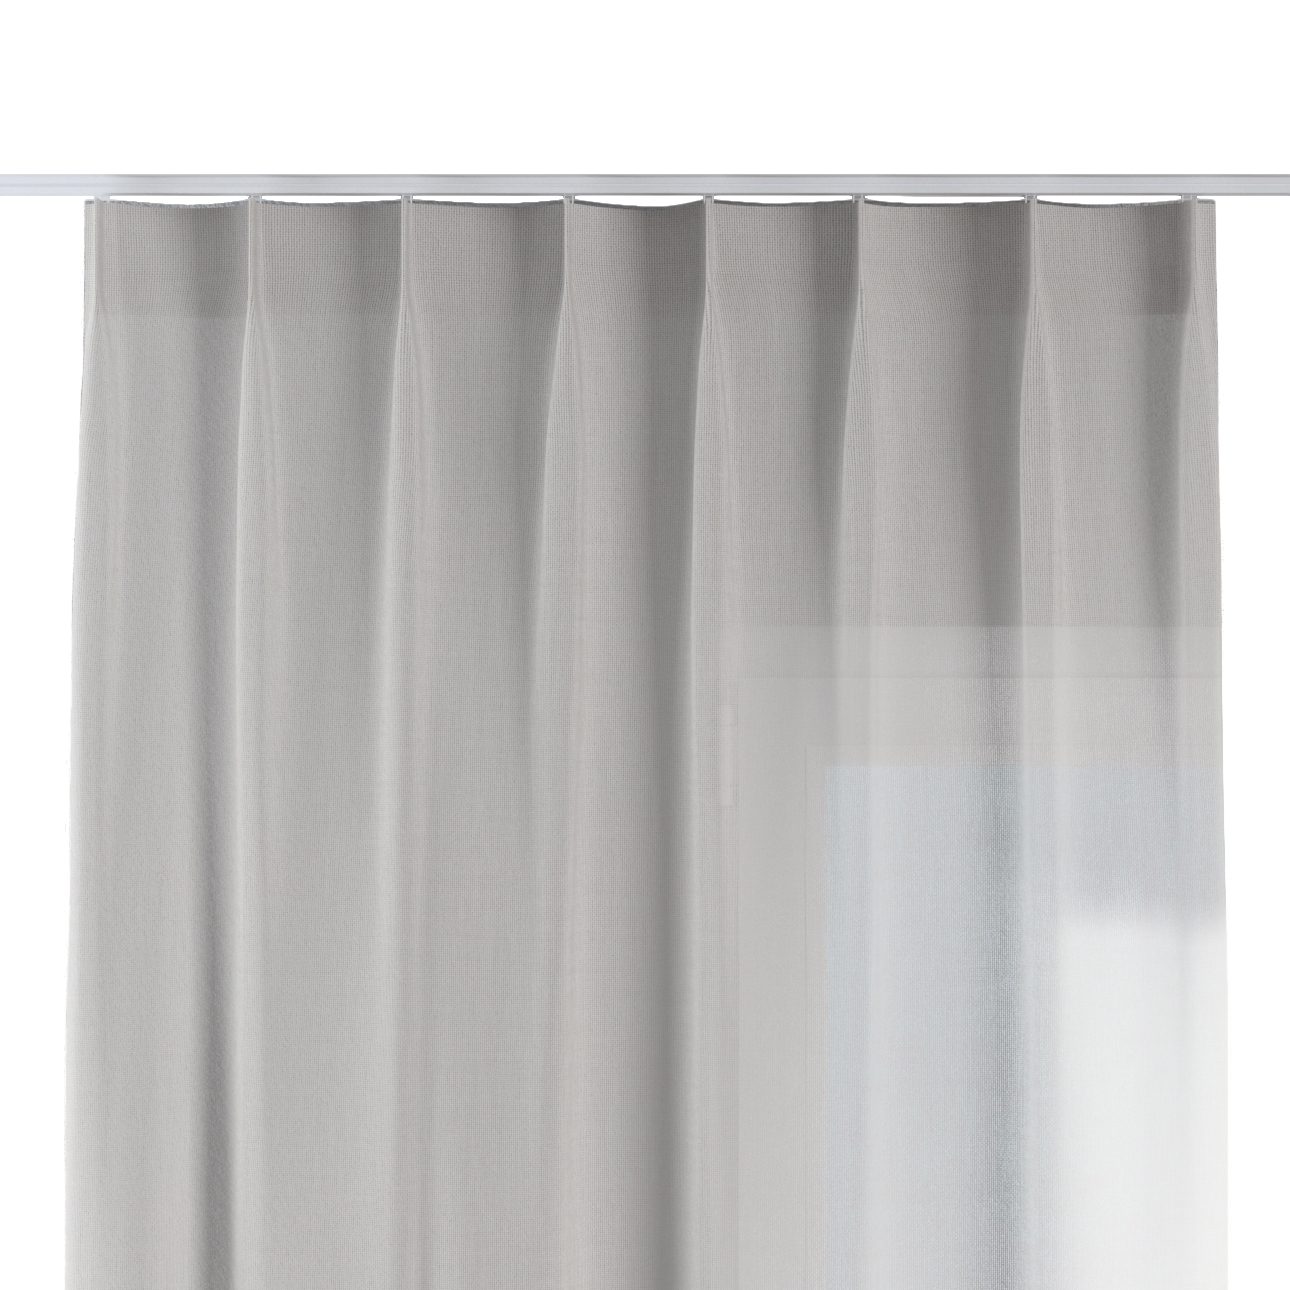 Vorhang mit flämischen 1-er Falten, weiß, Sensual Premium (144-54) günstig online kaufen